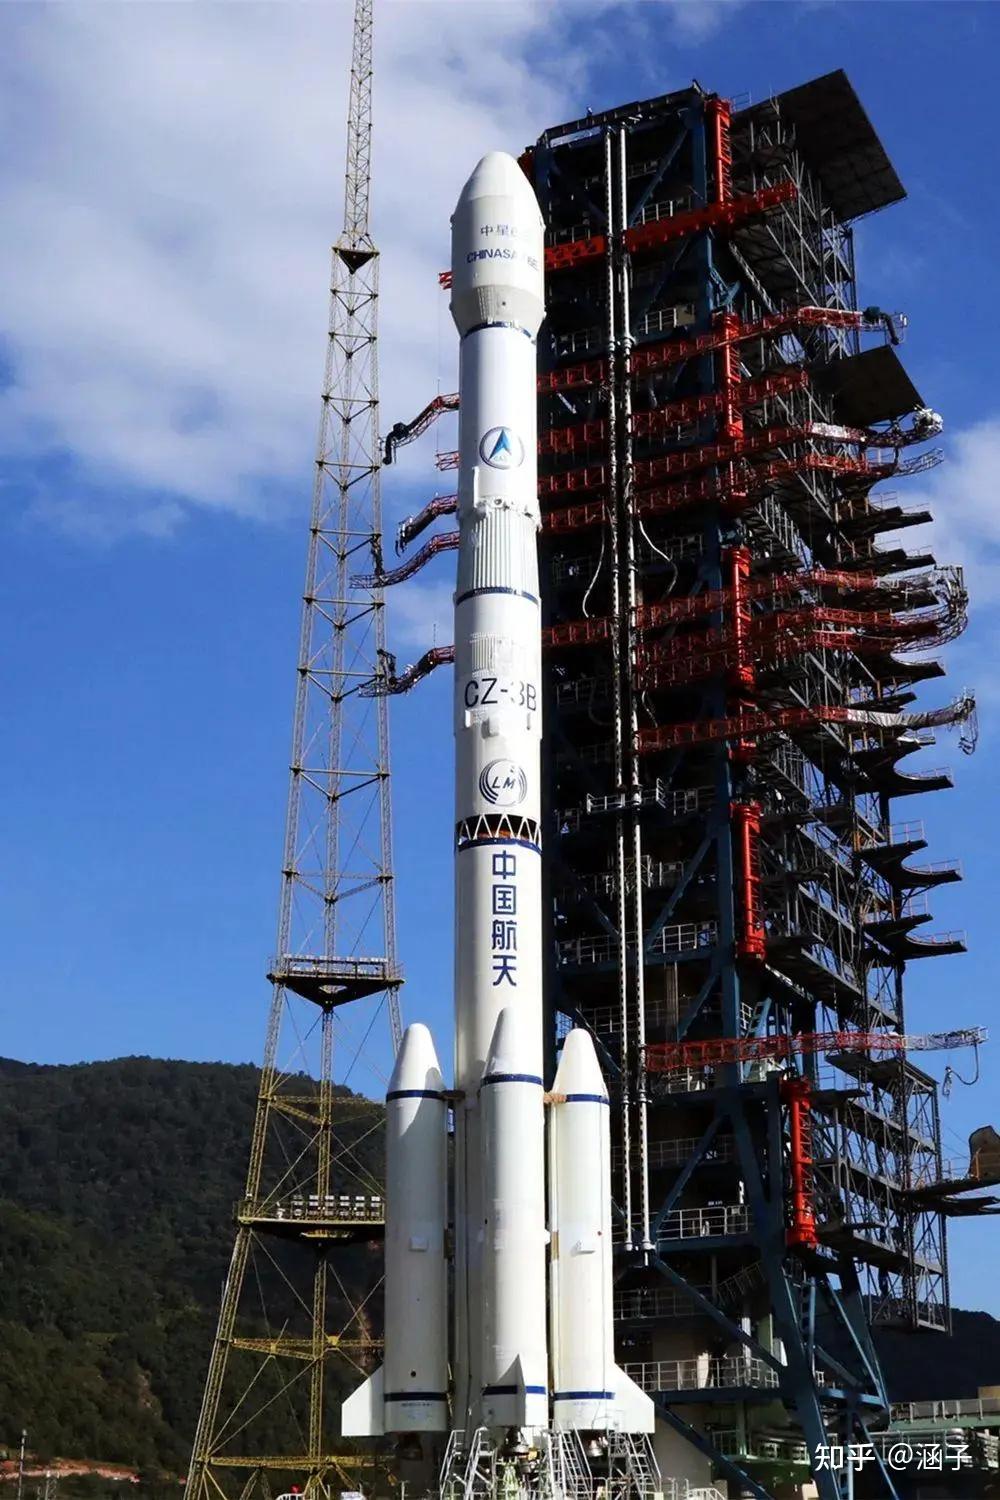 西昌卫星发射中心成功发射长三乙中星6e卫星我国广播通信传输能力将再